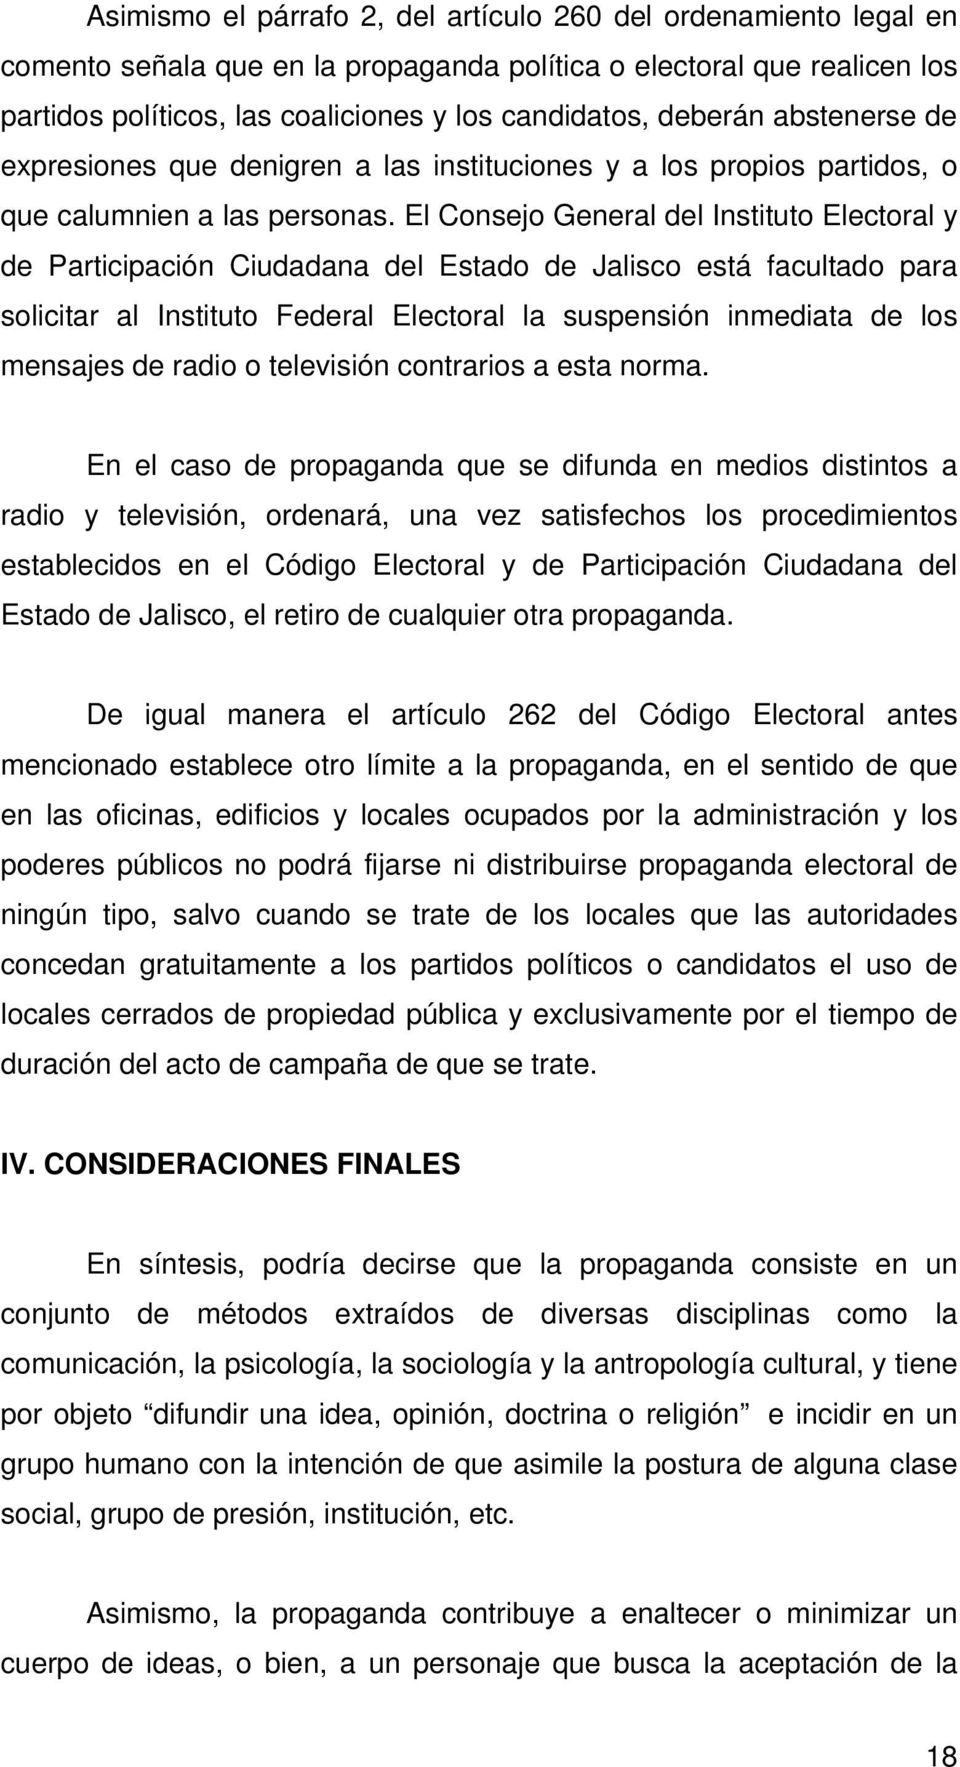 El Consejo General del Instituto Electoral y de Participación Ciudadana del Estado de Jalisco está facultado para solicitar al Instituto Federal Electoral la suspensión inmediata de los mensajes de